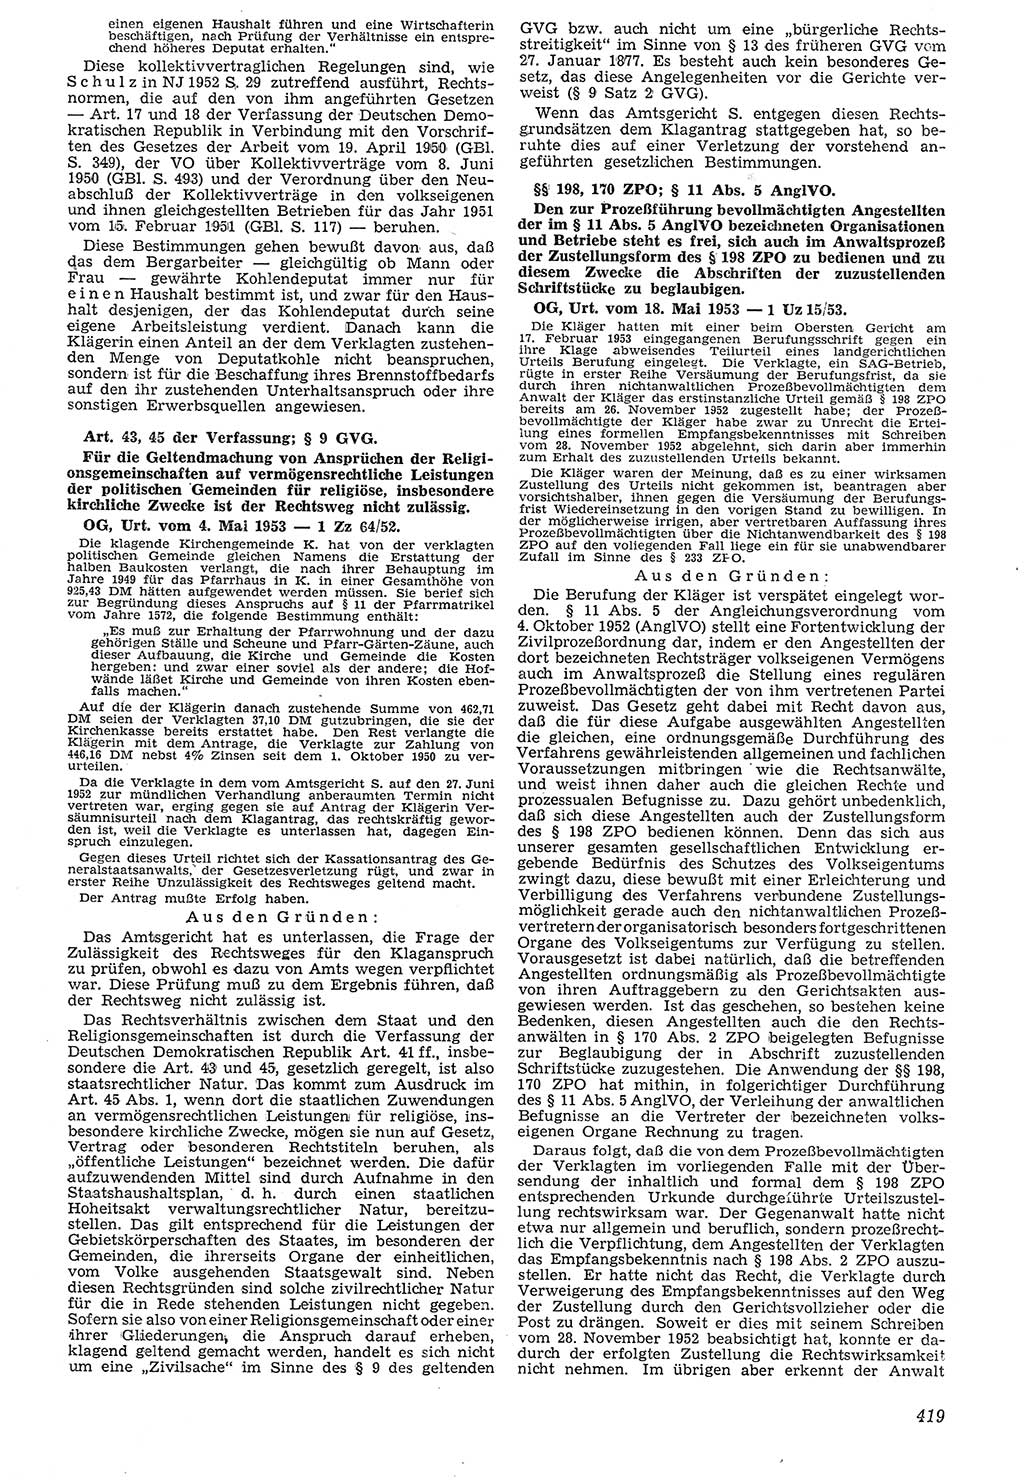 Neue Justiz (NJ), Zeitschrift für Recht und Rechtswissenschaft [Deutsche Demokratische Republik (DDR)], 7. Jahrgang 1953, Seite 419 (NJ DDR 1953, S. 419)